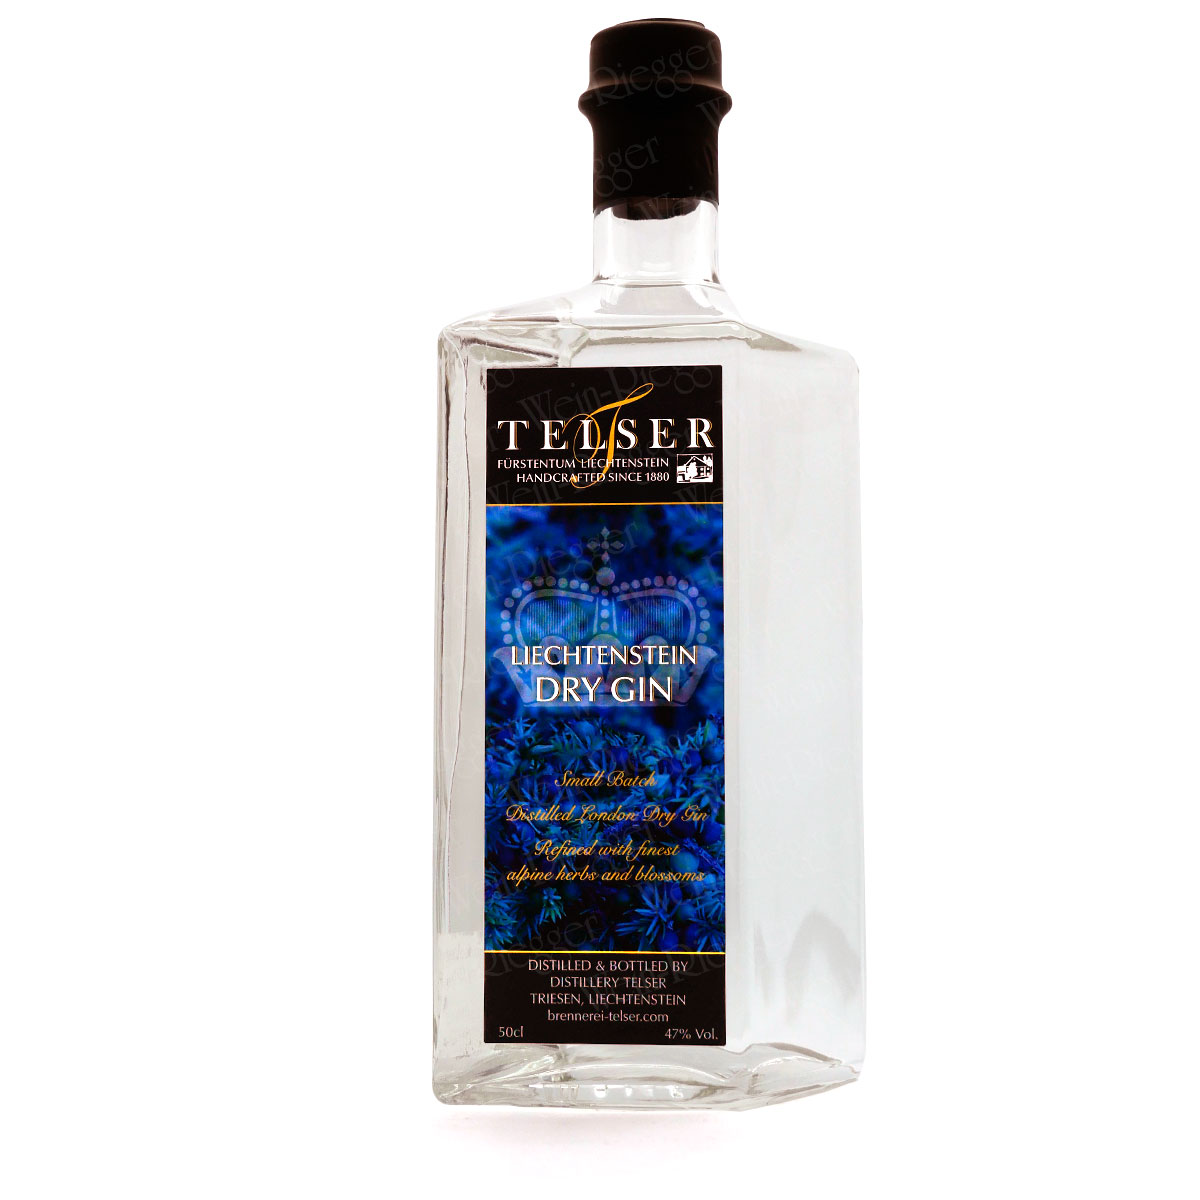 Telser Liechtenstein Dry Gin